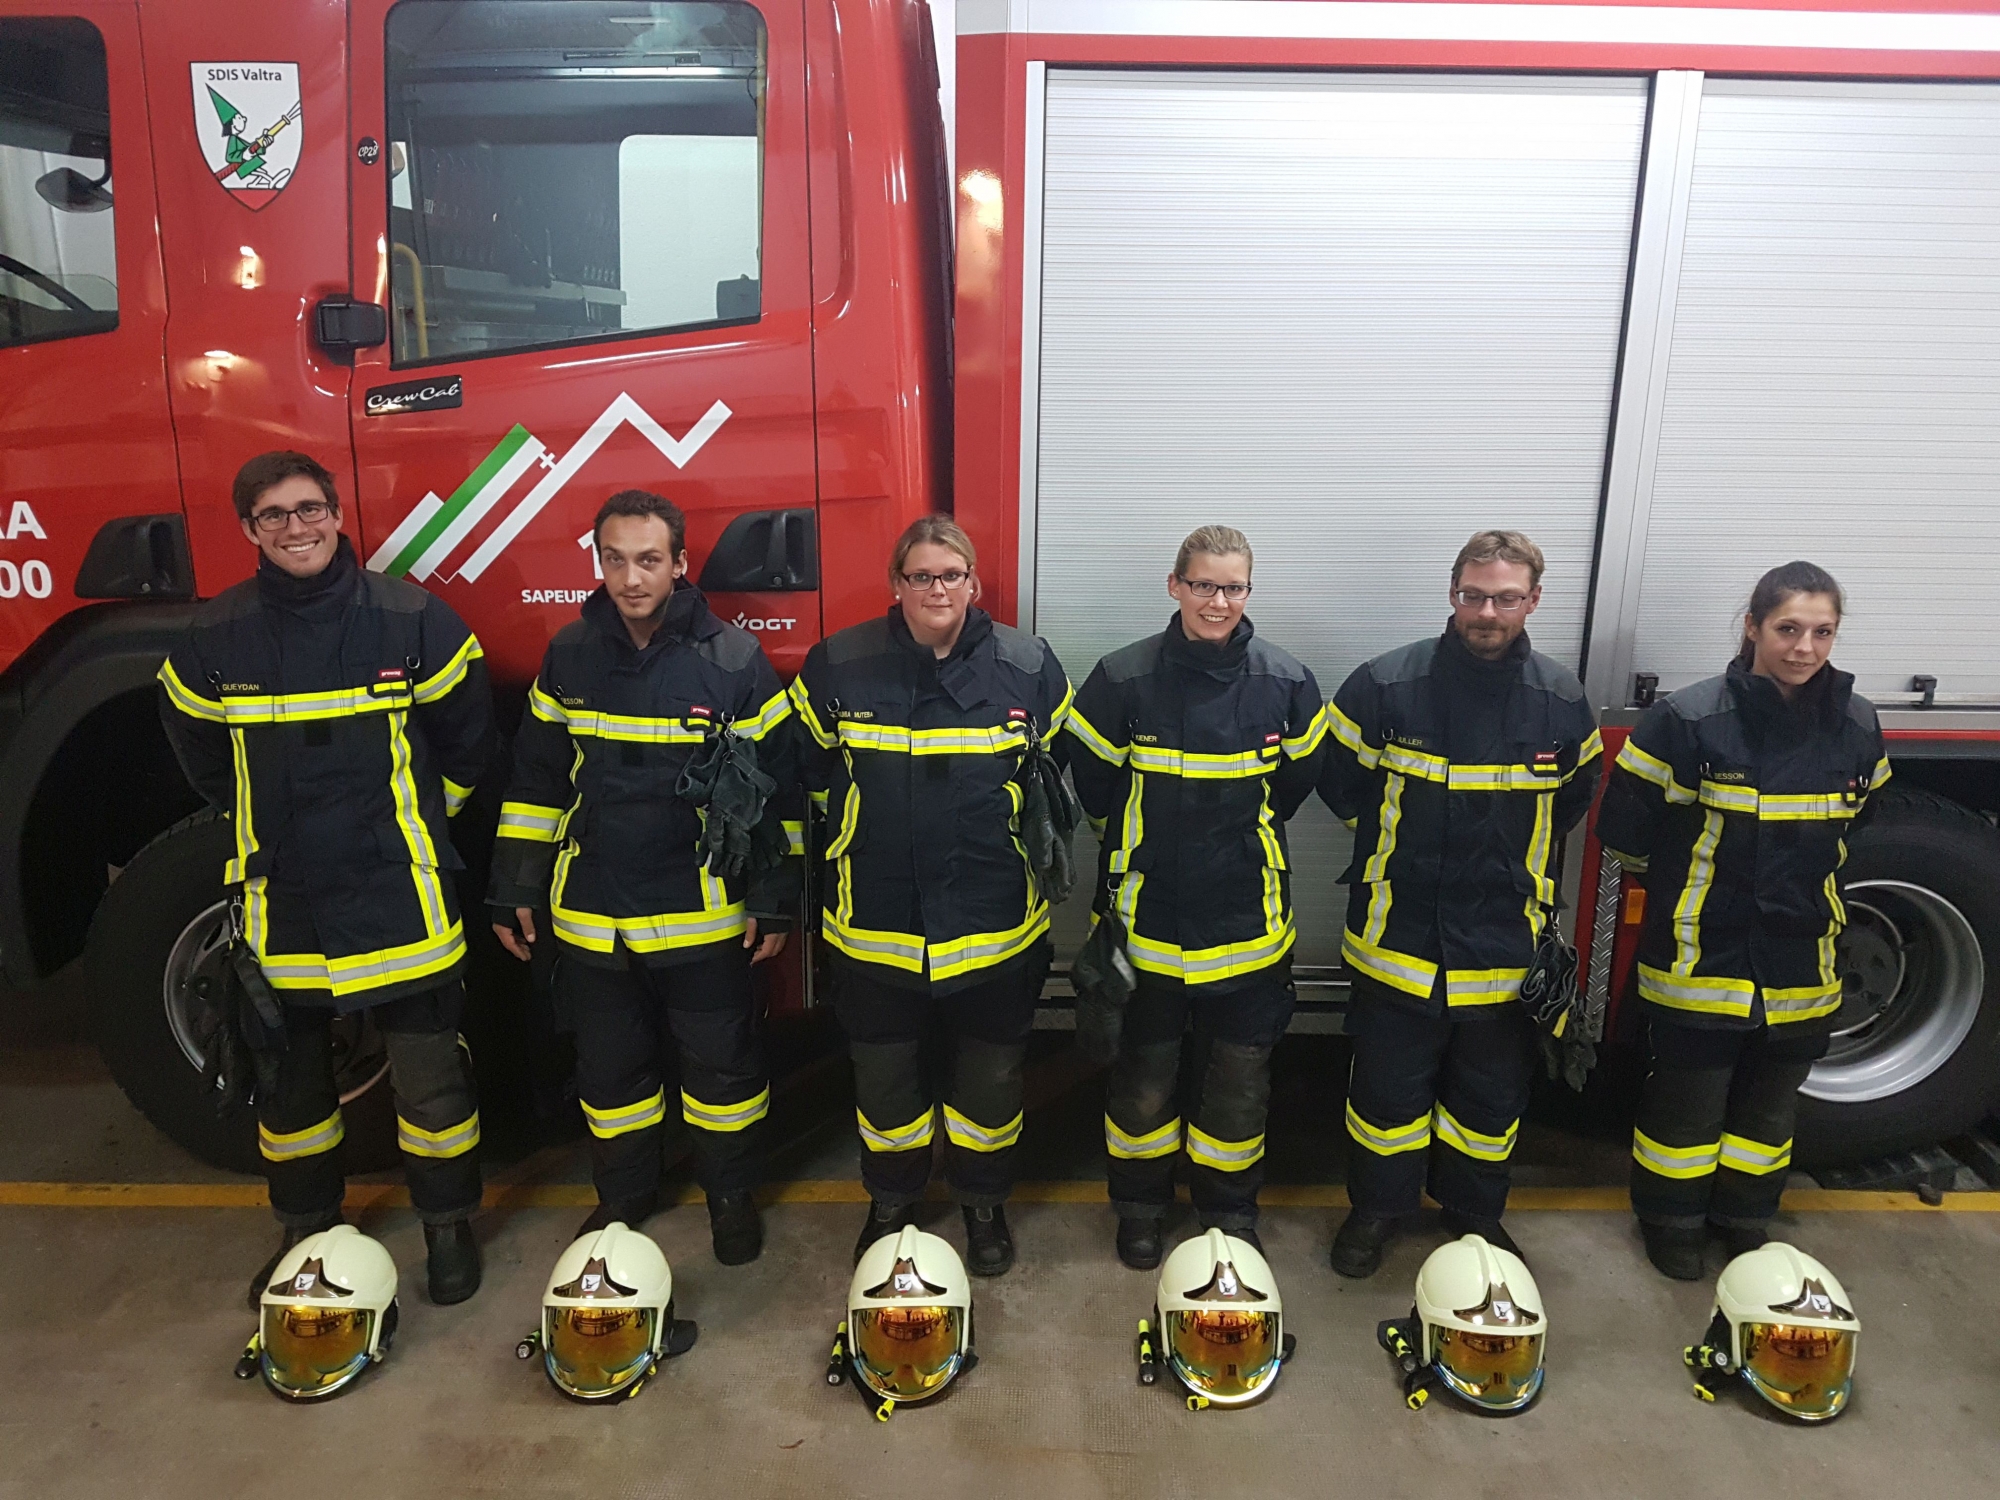 Ils sont six sur la photo, mais ce sont bien huit nouveaux sapeurs-pompiers qui ont rejoint le service de défense incendie et de secours du Val-de-Travers.